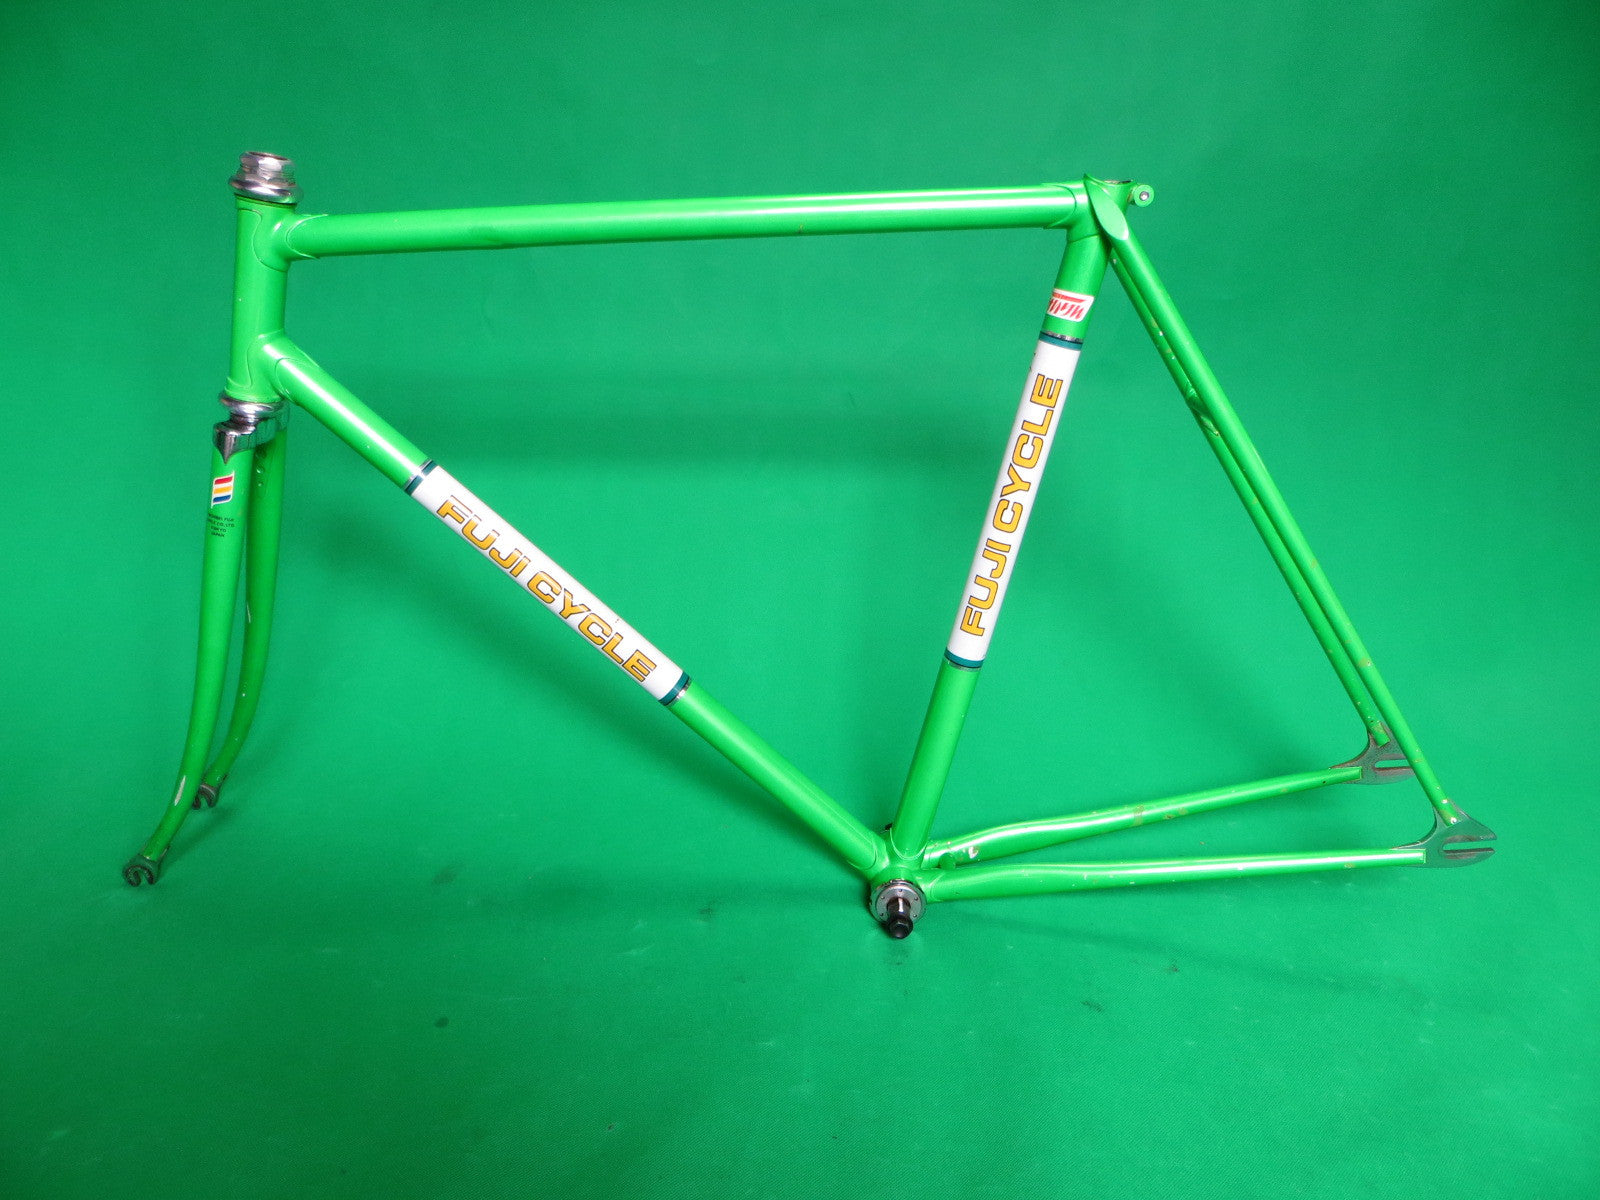 NICHIBEI FUJI // vintage green metallic 1980 // 53cm